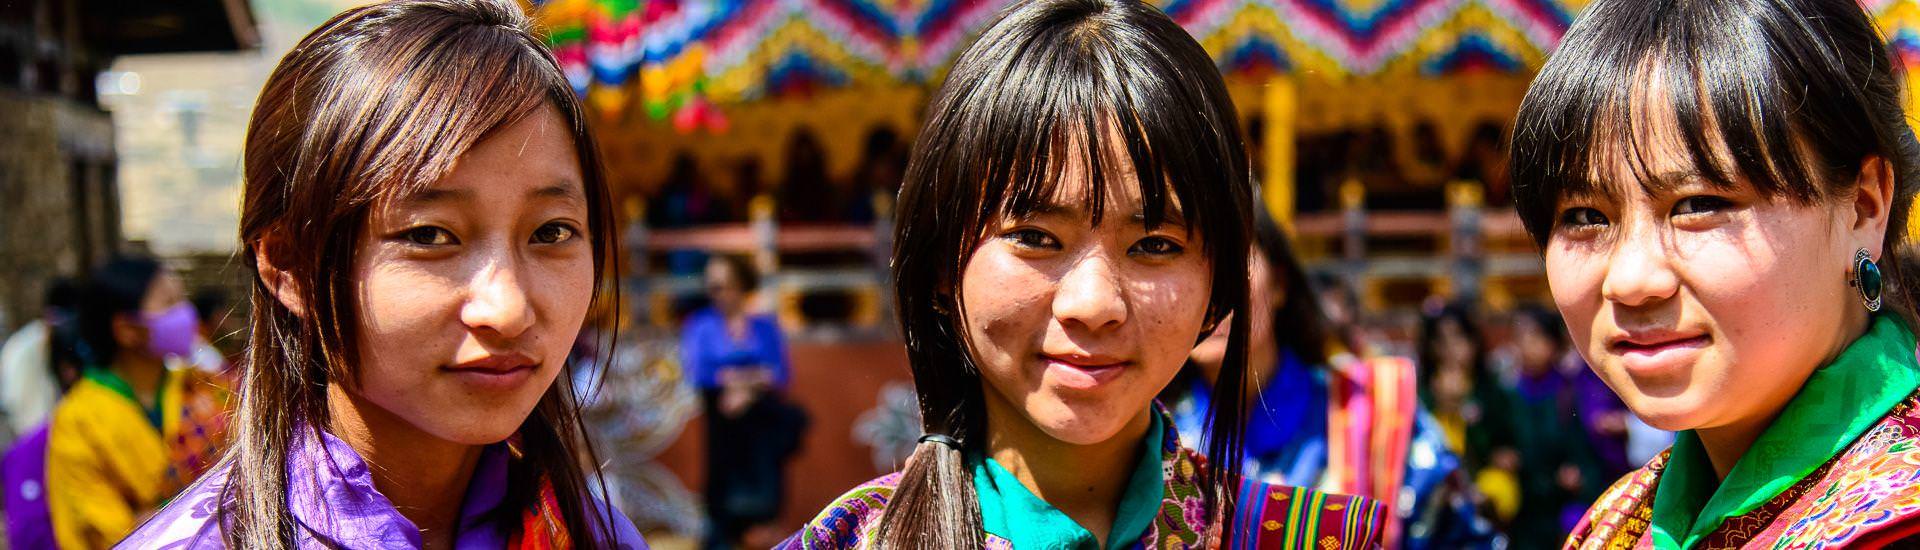 Mdchen aus Bhutan im Festgewand |  Kai-Uwe Kchler, Art & Adventure / Chamleon